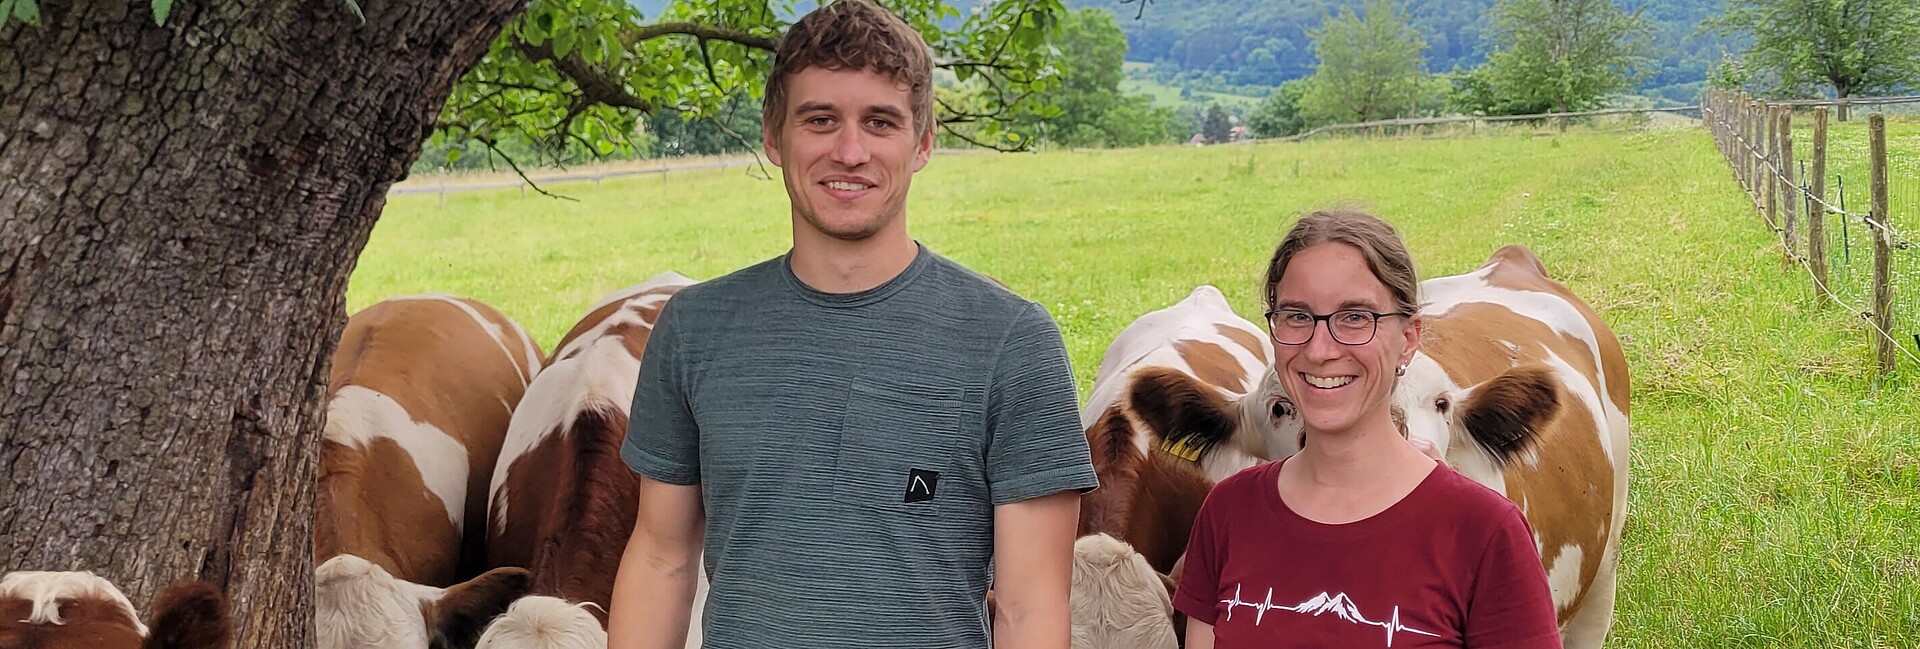 Unter einem Baum stehen Felix Hezel und Dr. Miram Knauer und lächeln in die Kamera. Dahinter stehen Kühe auf der Weide.